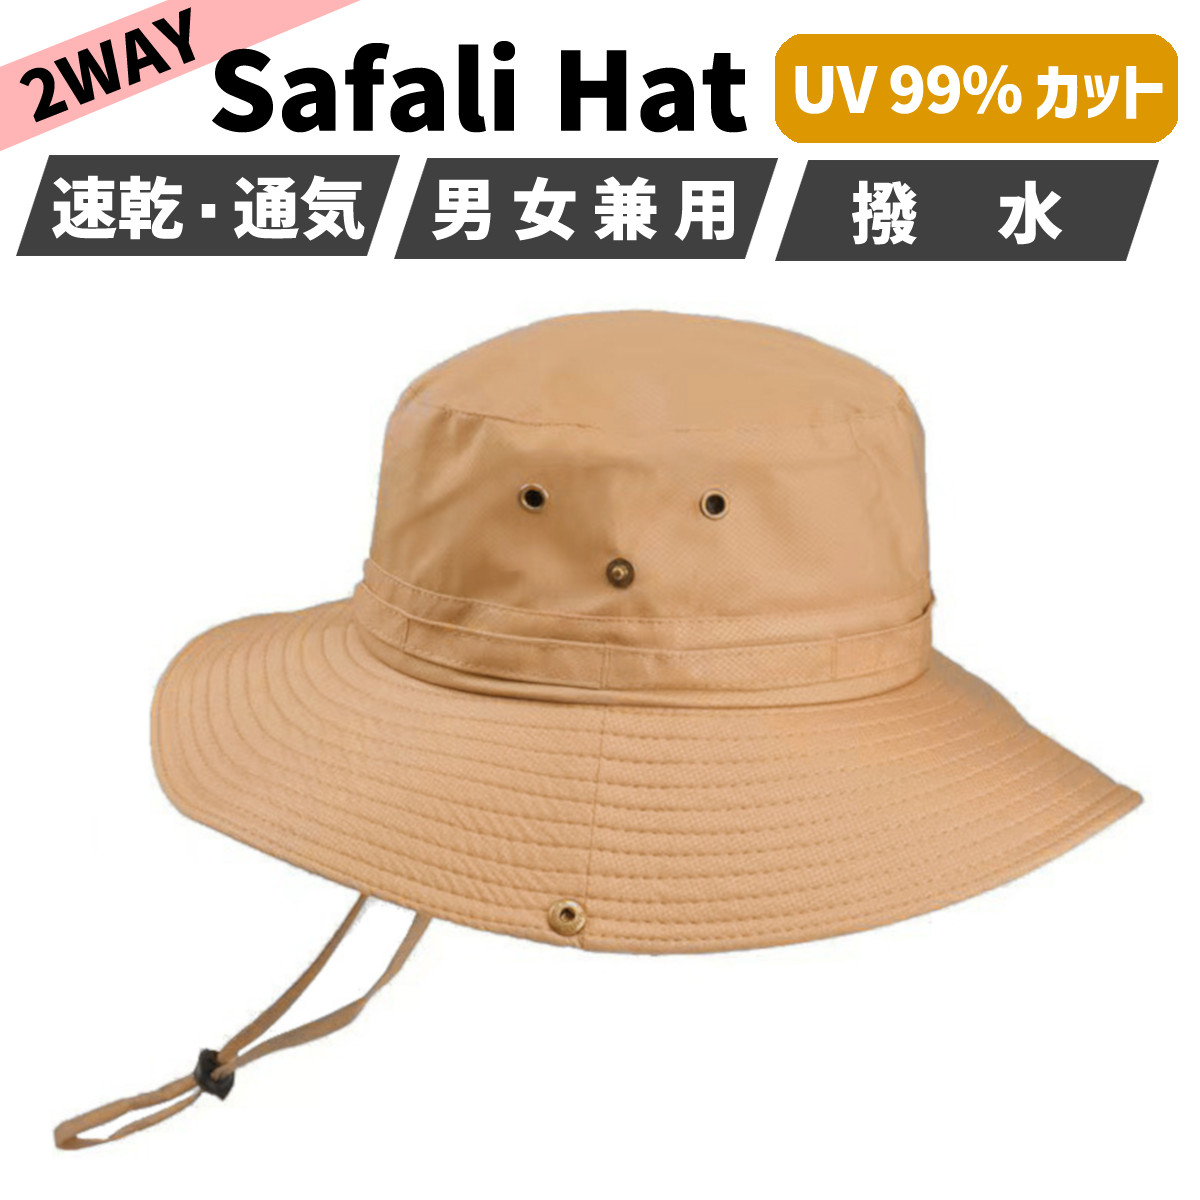 サファリハット メンズ レディース 撥水 大きい 帽子 ハット バケット